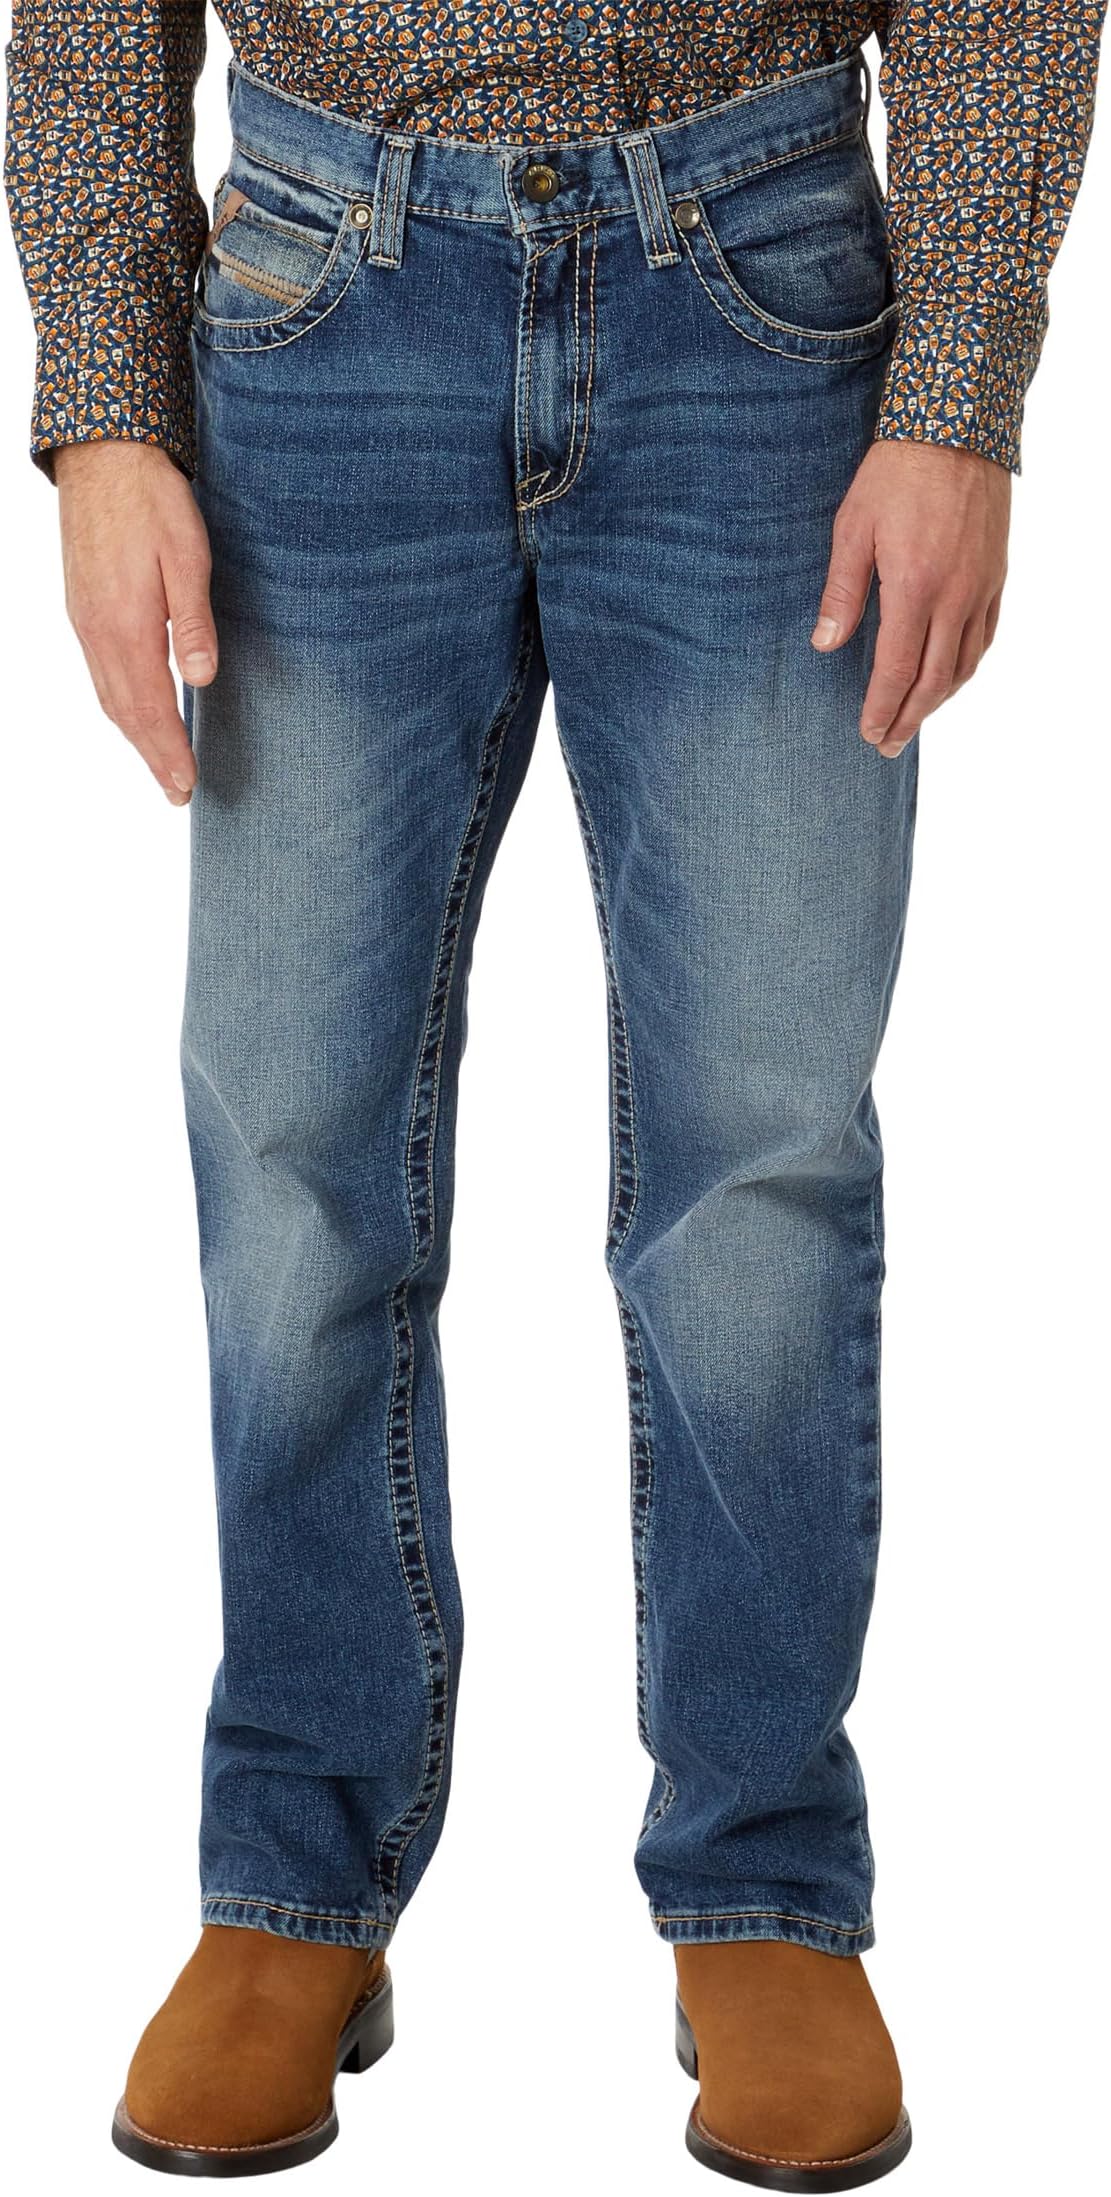 Джинсы M4 Straight Leg Longspur Jeans Ariat, цвет Dakota